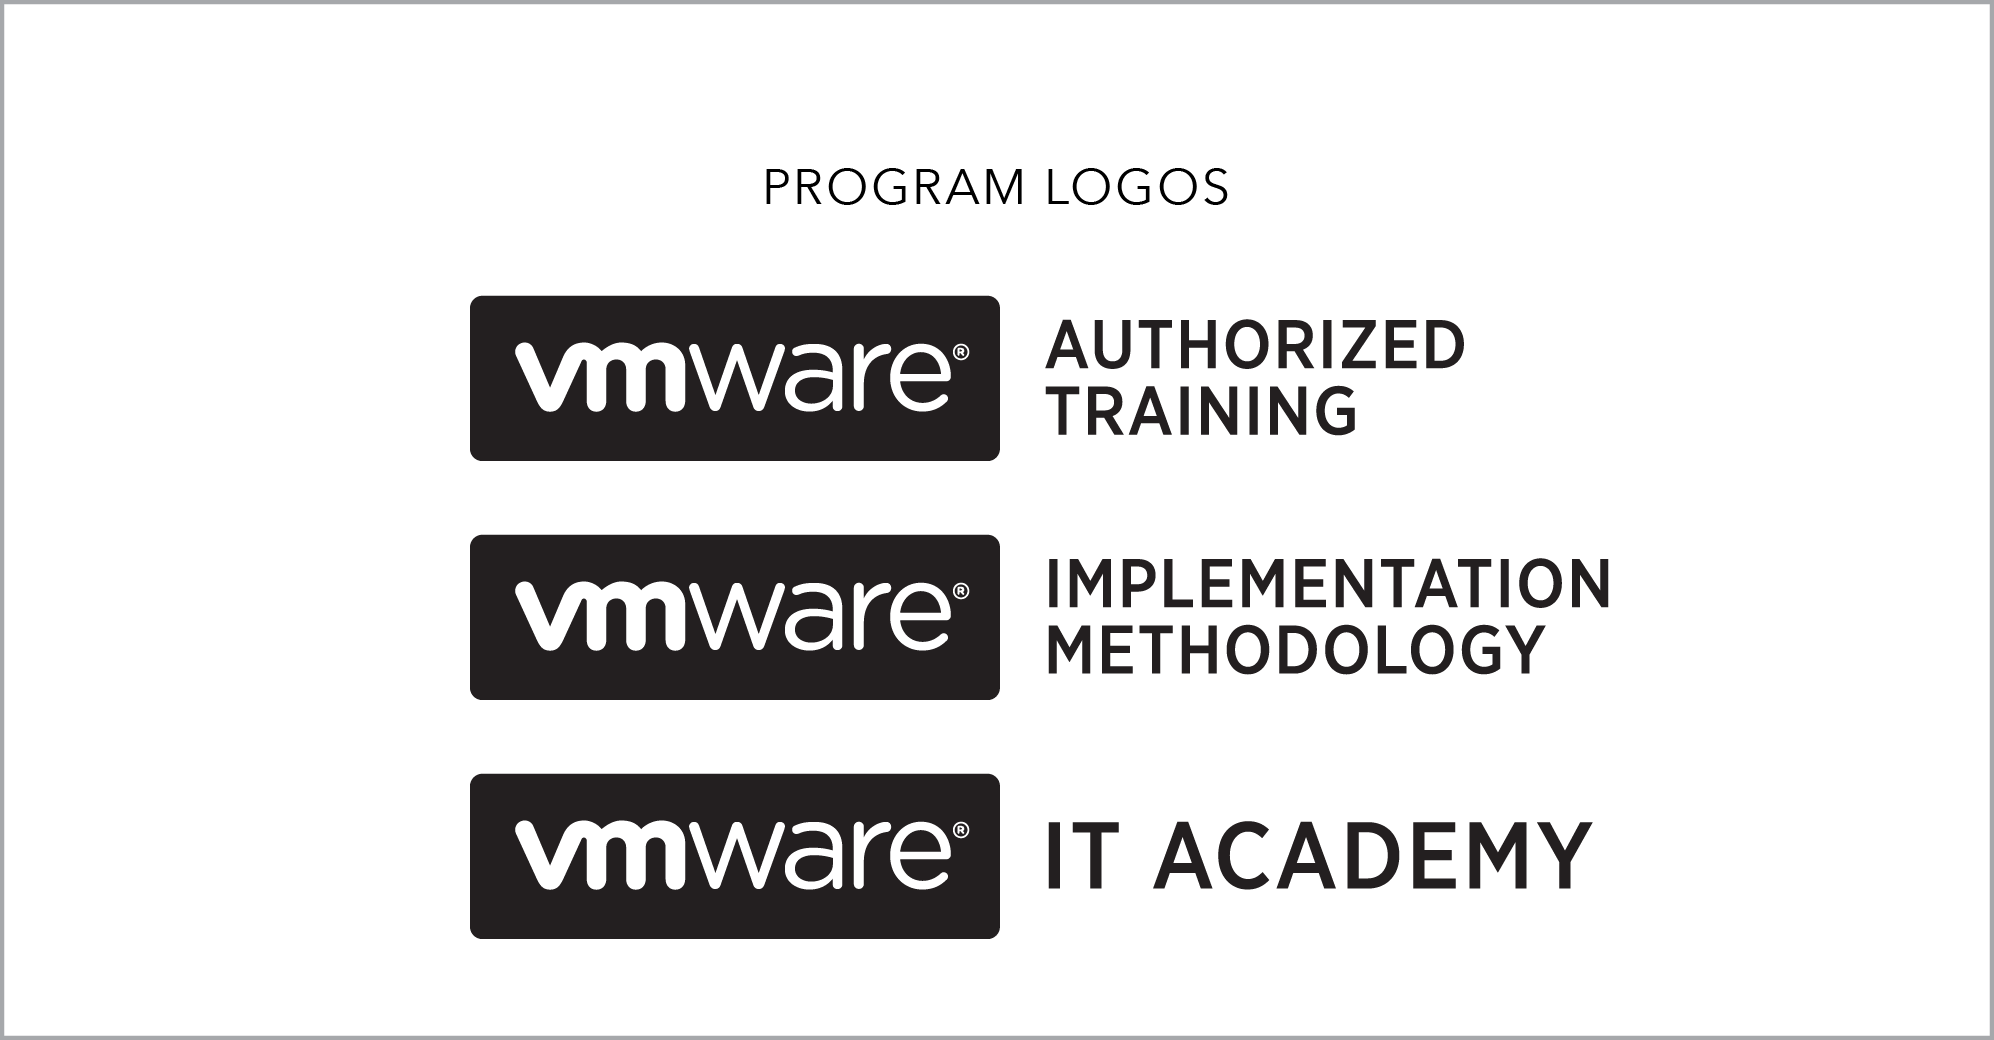 VMW-Logos-programlogos.png